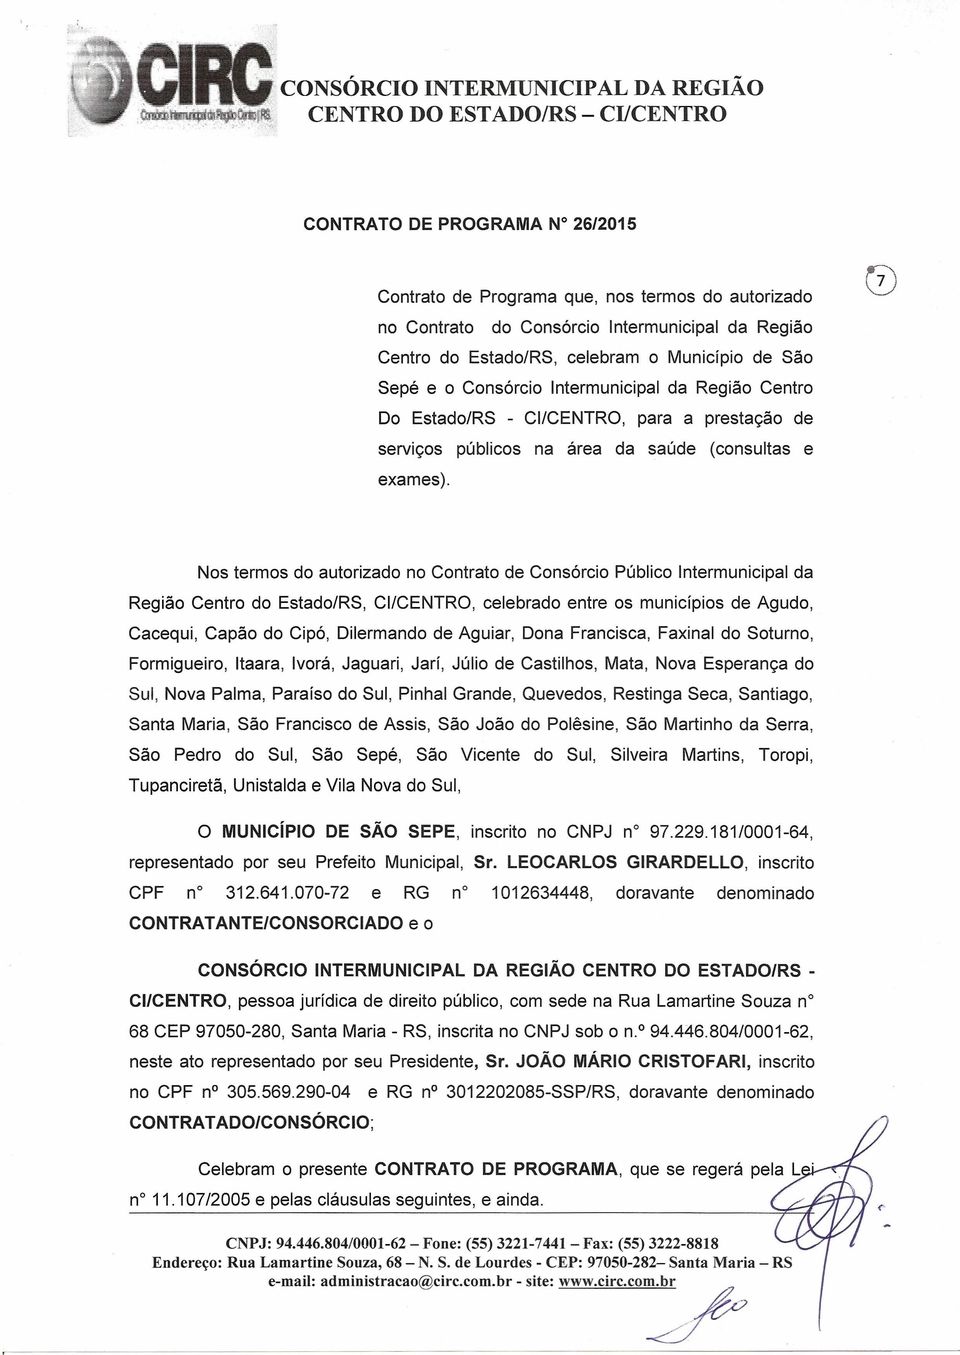 Consórcio Intermunicipal da Região Centro Do Estado/RS - CI/CENTRO, para a prestação de serviços públicos na área da saúde (consultas e exames).